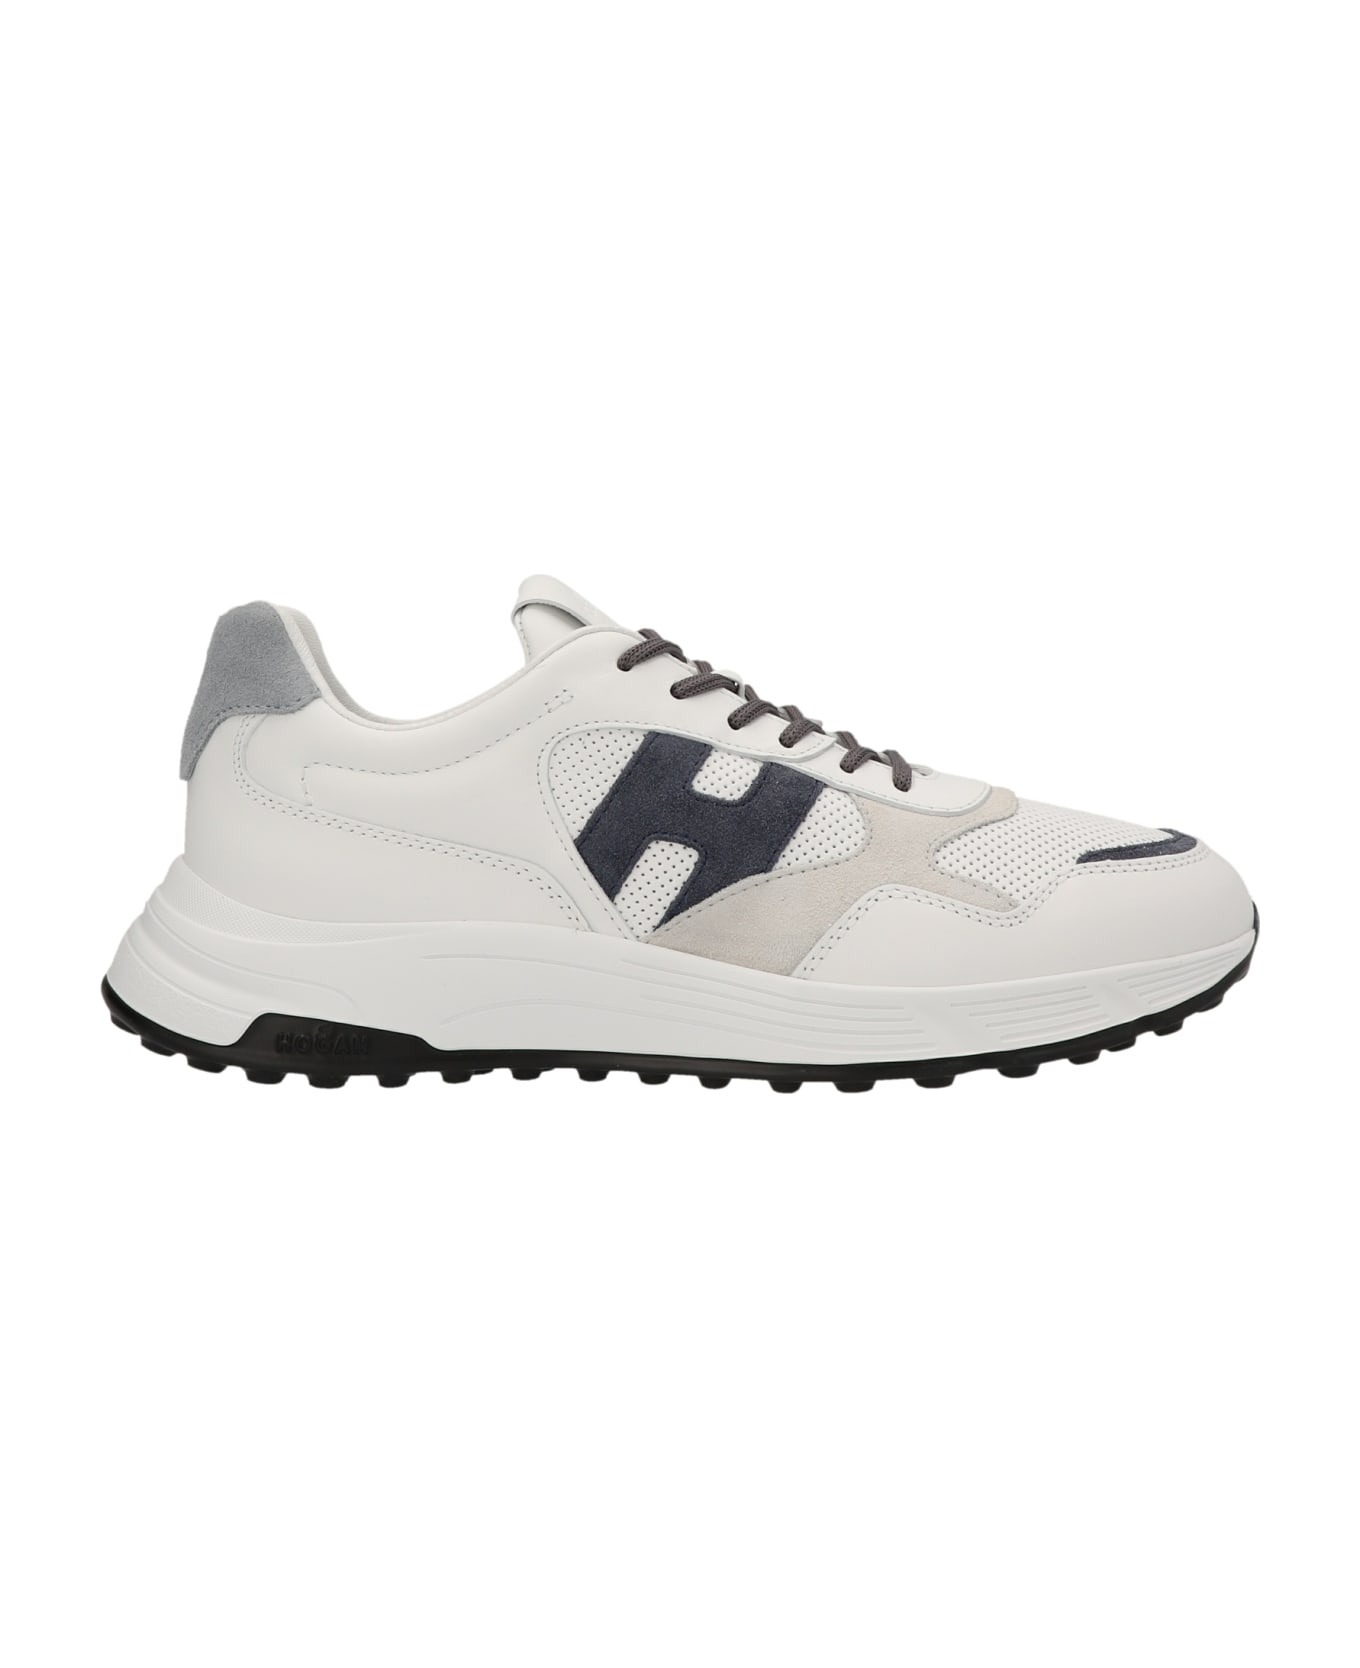 Hogan Hyperlight Sneakers - W Multi